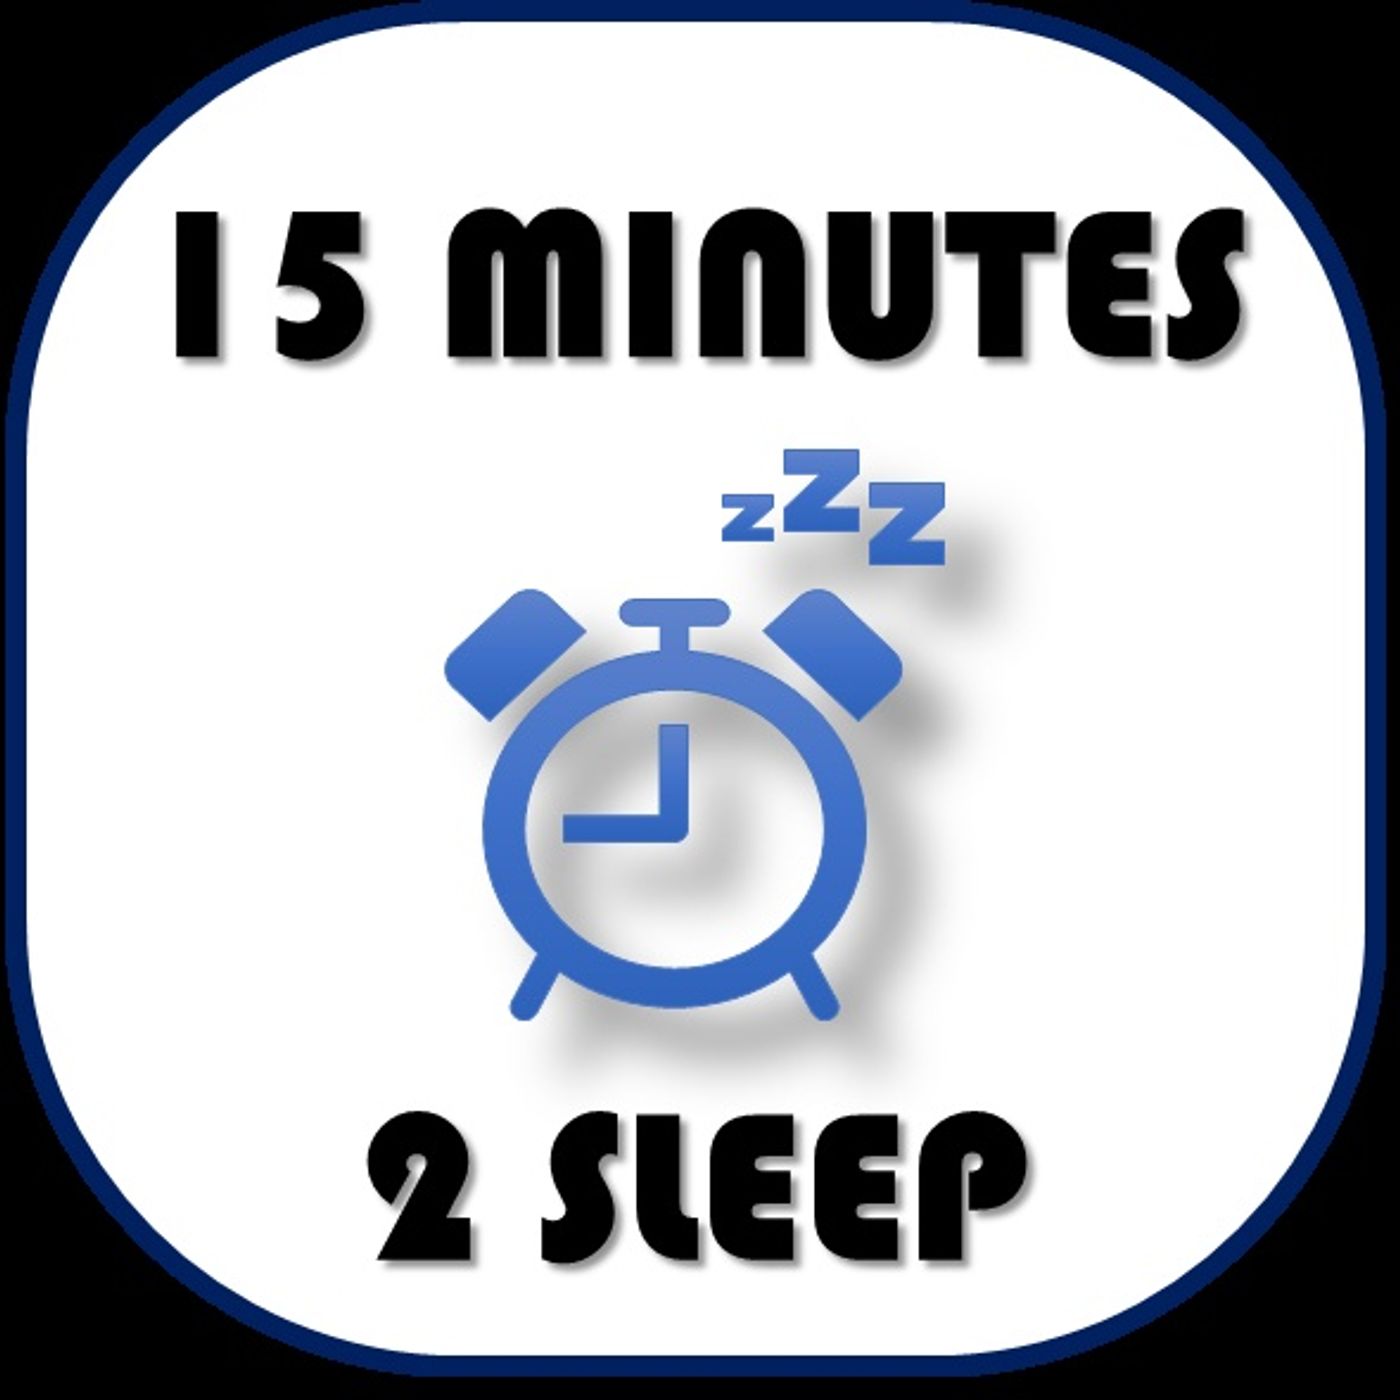 15 Minutes 2 Sleep